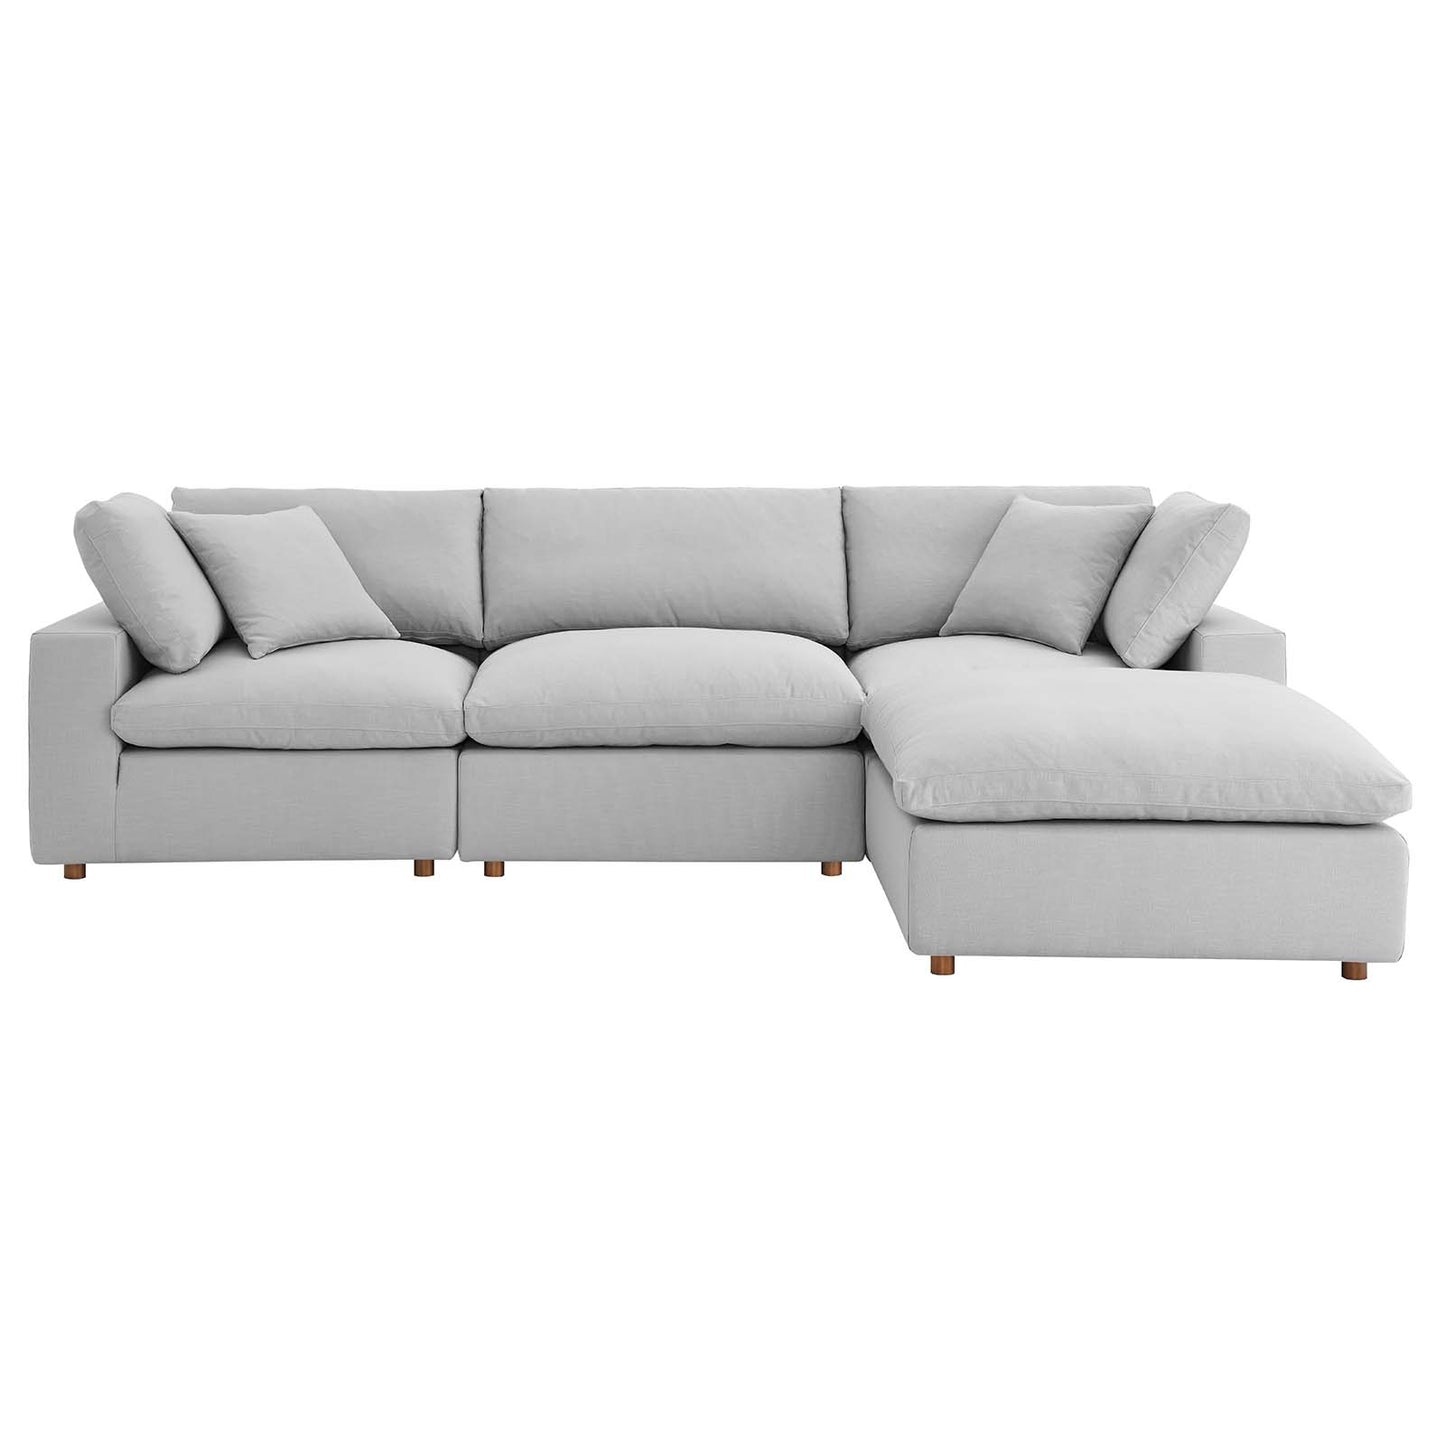 Commix Down Filled Overstuffed 4 Piece Sectional Sofa Set Light Gray EEI-3356-LGR